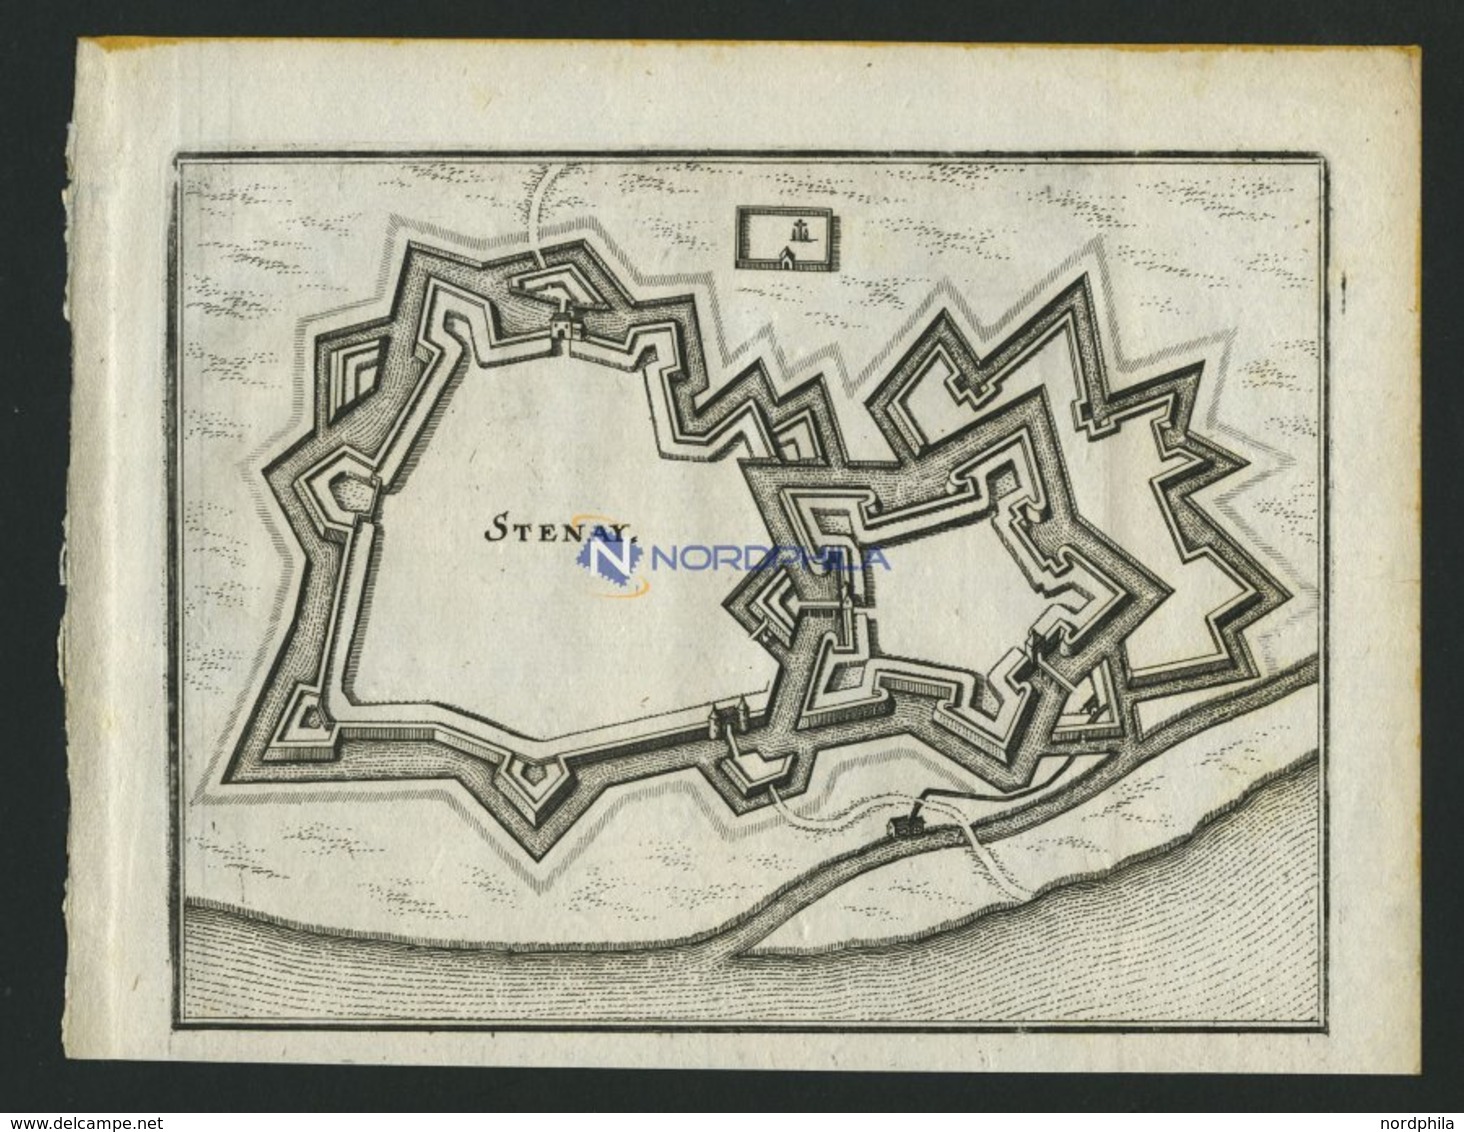 STENAY, Grundrißplan, Kupferstich Von Merian Um 1645 - Lithographien